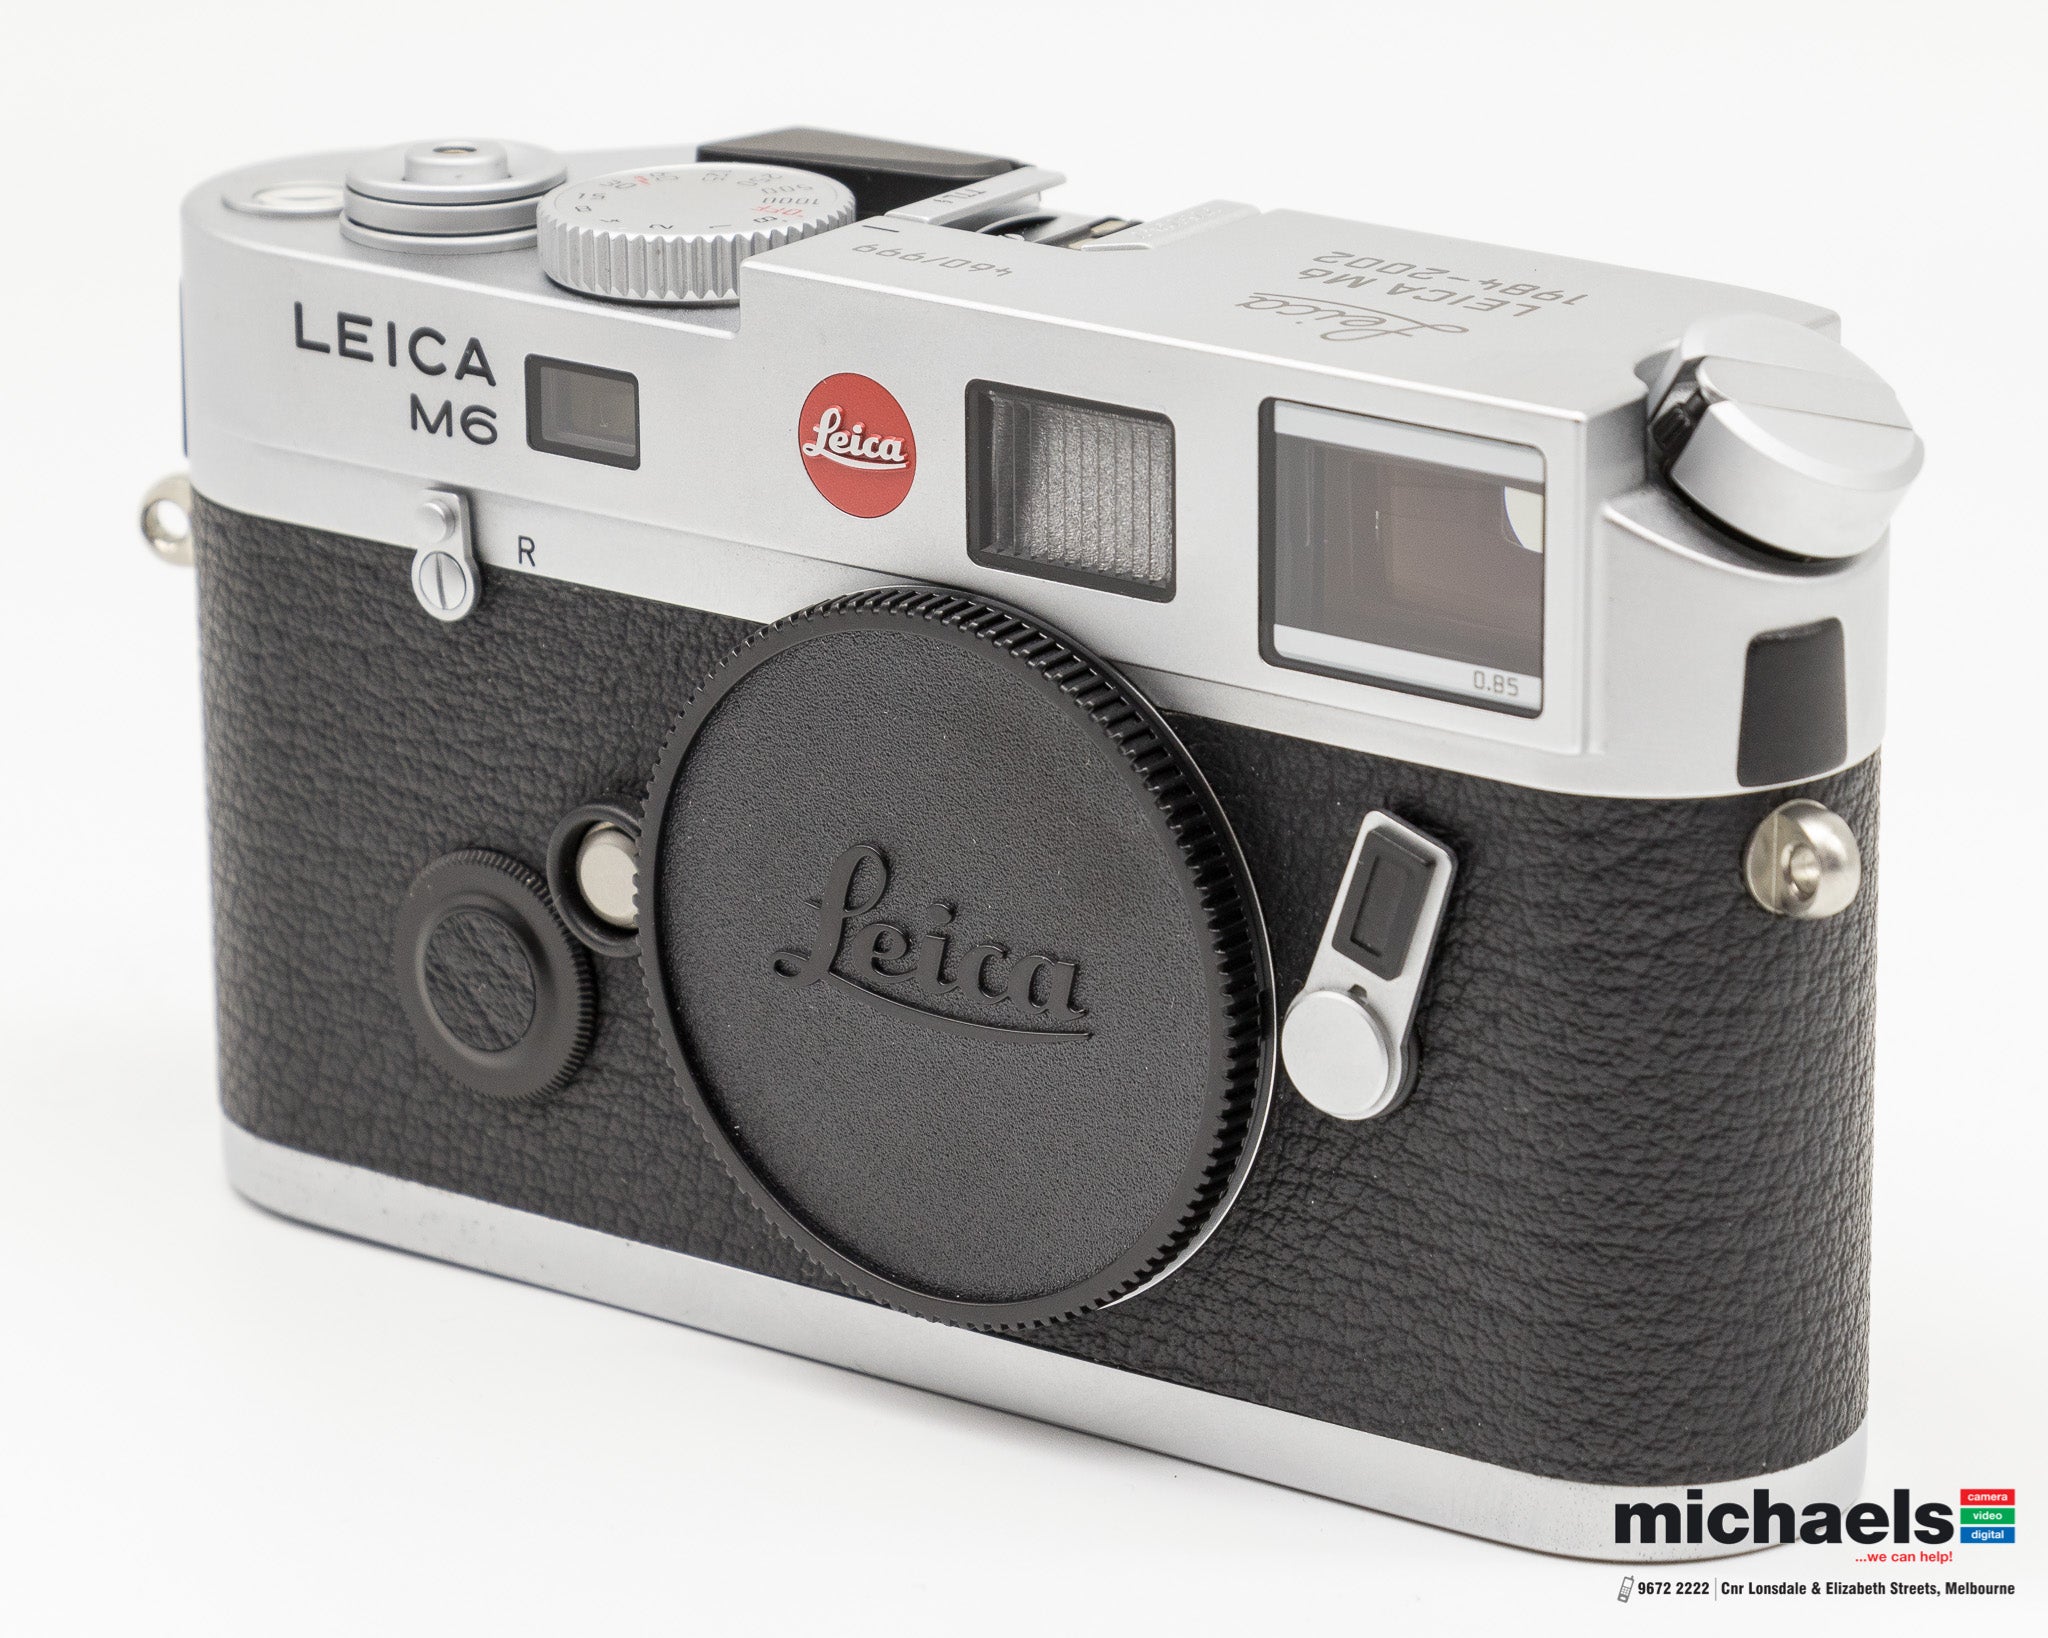 New in Used @ michaels: Leica Die letzten 999 M6 TTL Serial # 460